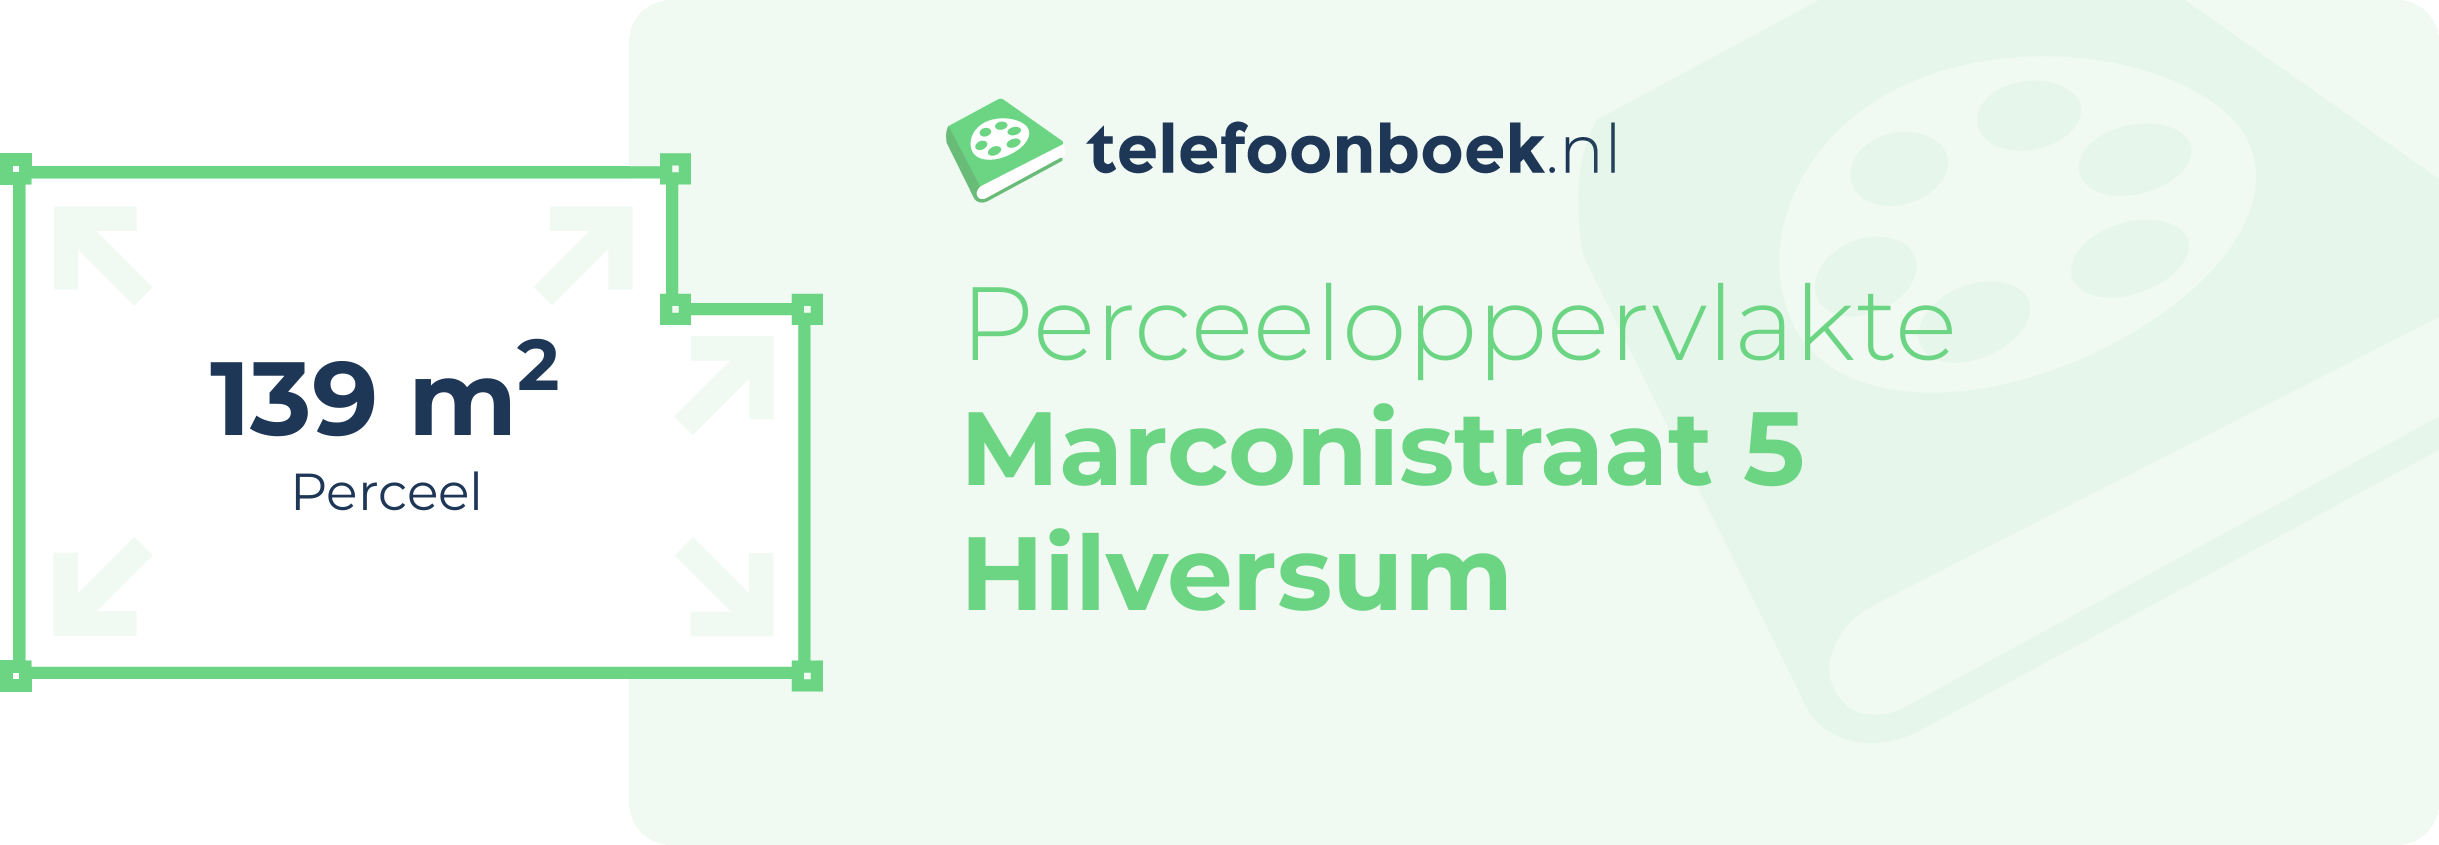 Perceeloppervlakte Marconistraat 5 Hilversum